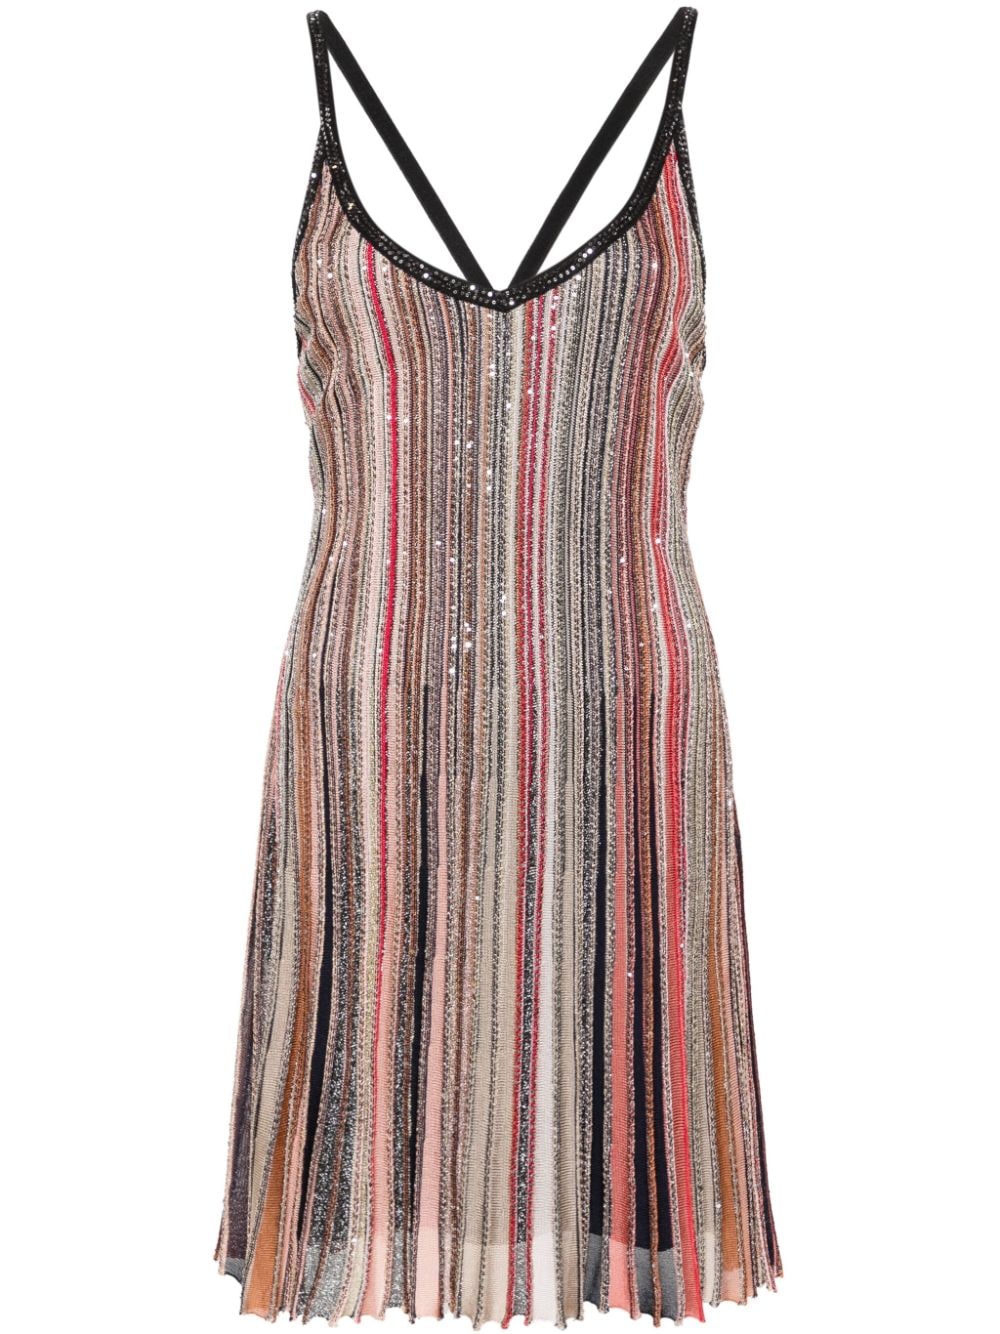 黒ストライプの短いドレス　メタリックな糸とシークインで装飾 (Black Striped Short Dress with Metallic Threading and Sequin Embellishment)